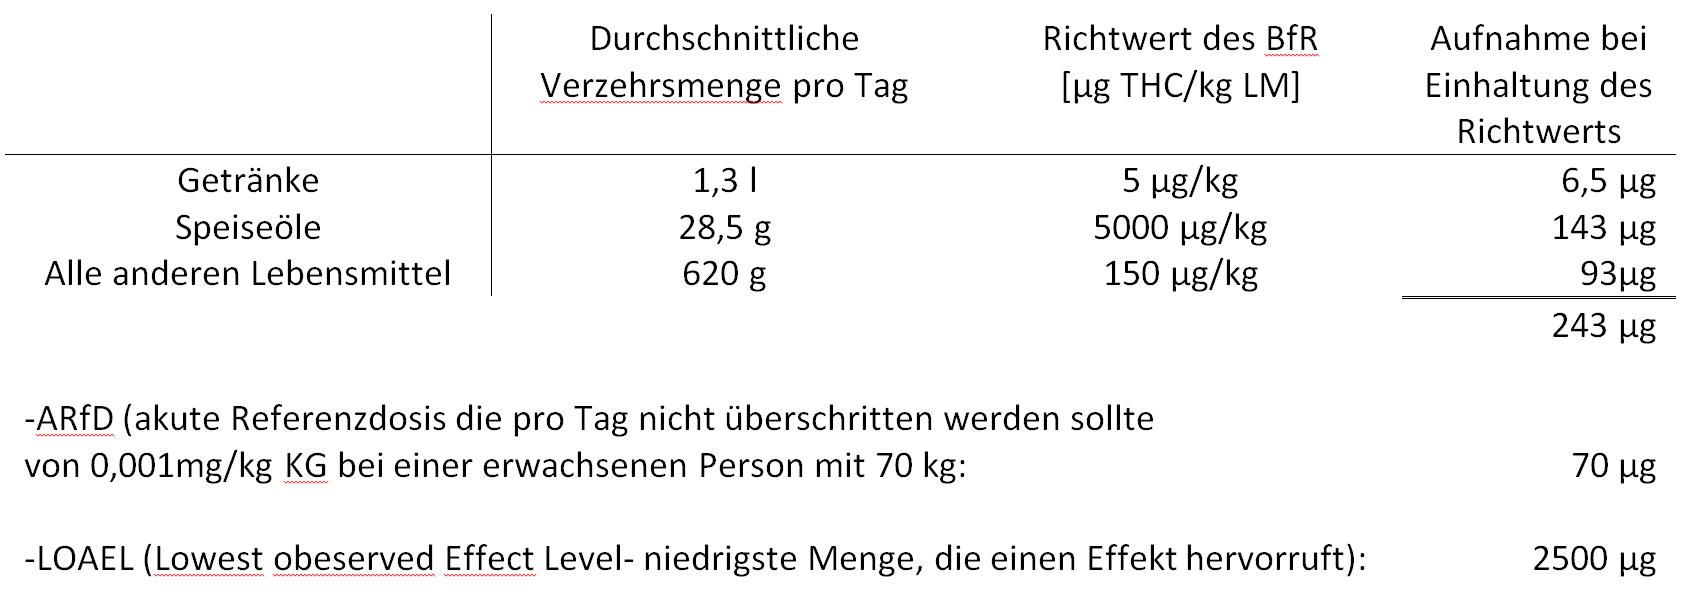 Die Tabelle zeigt eine Berechnung zu den über Hanflebensmittel tatsächlich aufgenommenen THC-Mengen für Lebensmittel, die alle Richtwerte einhalten. 243 µg werden dabei aufgenommen und die täglich tolerable Dosis von 70 µg für einen Erwachsenen von 70 kg Körpergewicht dabei bei weiterm überschritten.